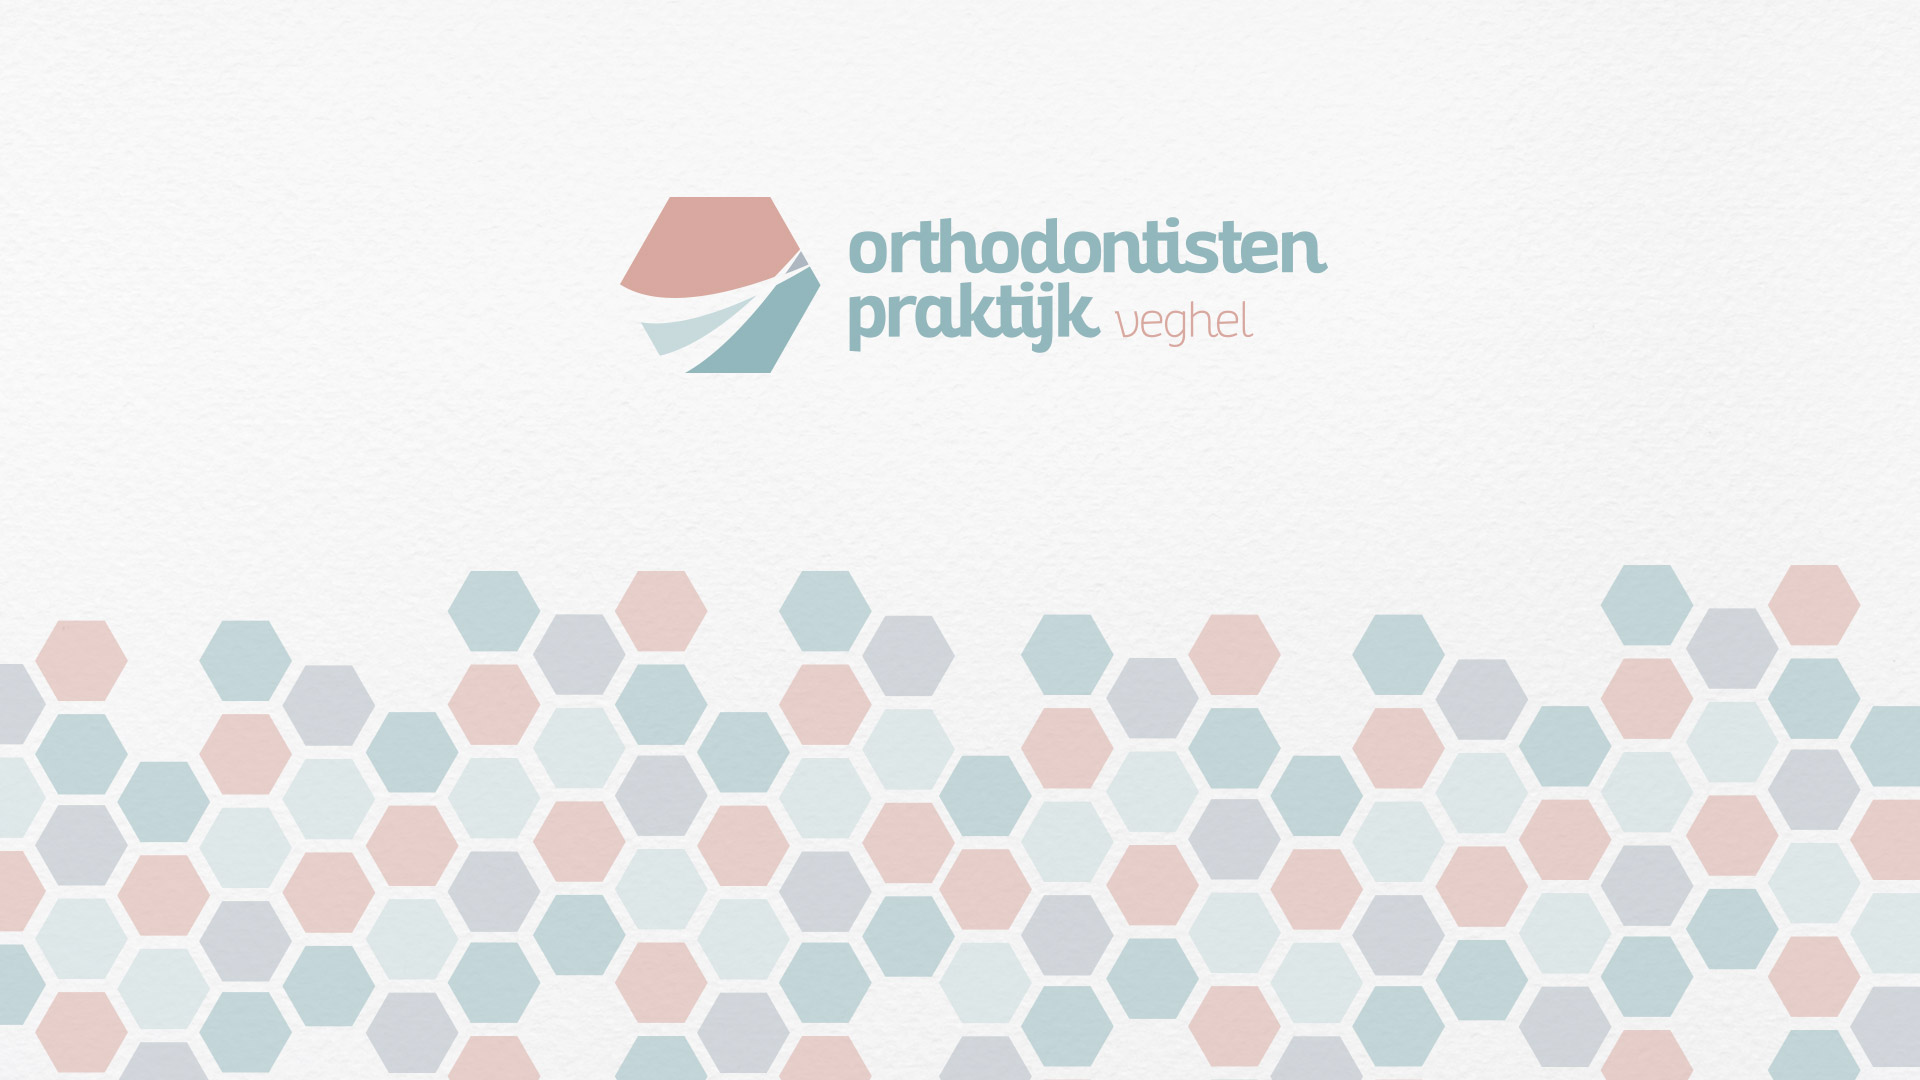 orthodontistenpraktijk-veghel-03.jpg